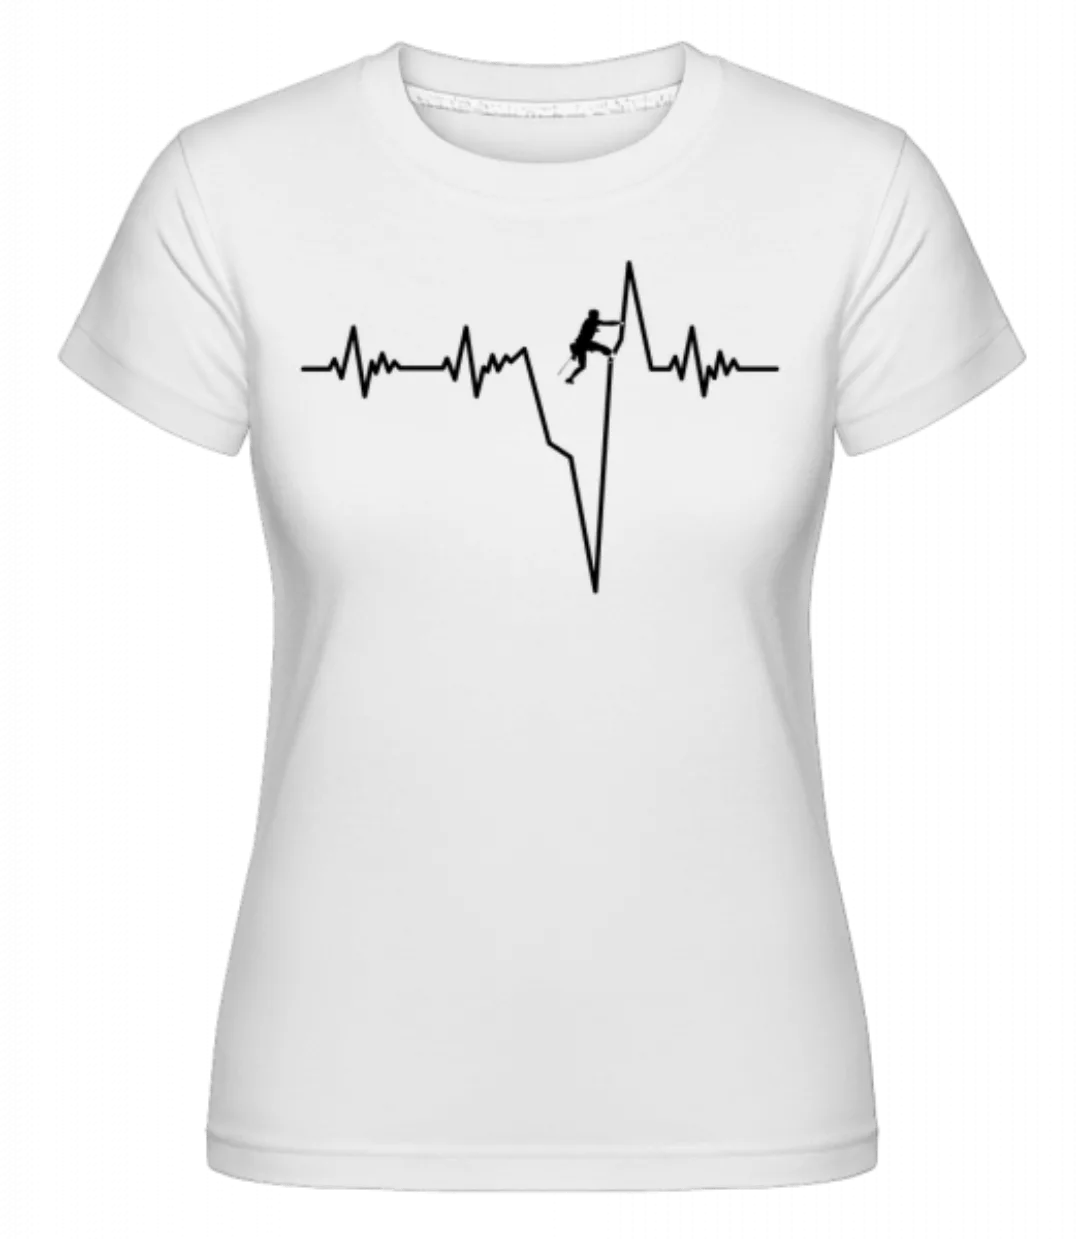 Bouldern Herzschlag · Shirtinator Frauen T-Shirt günstig online kaufen